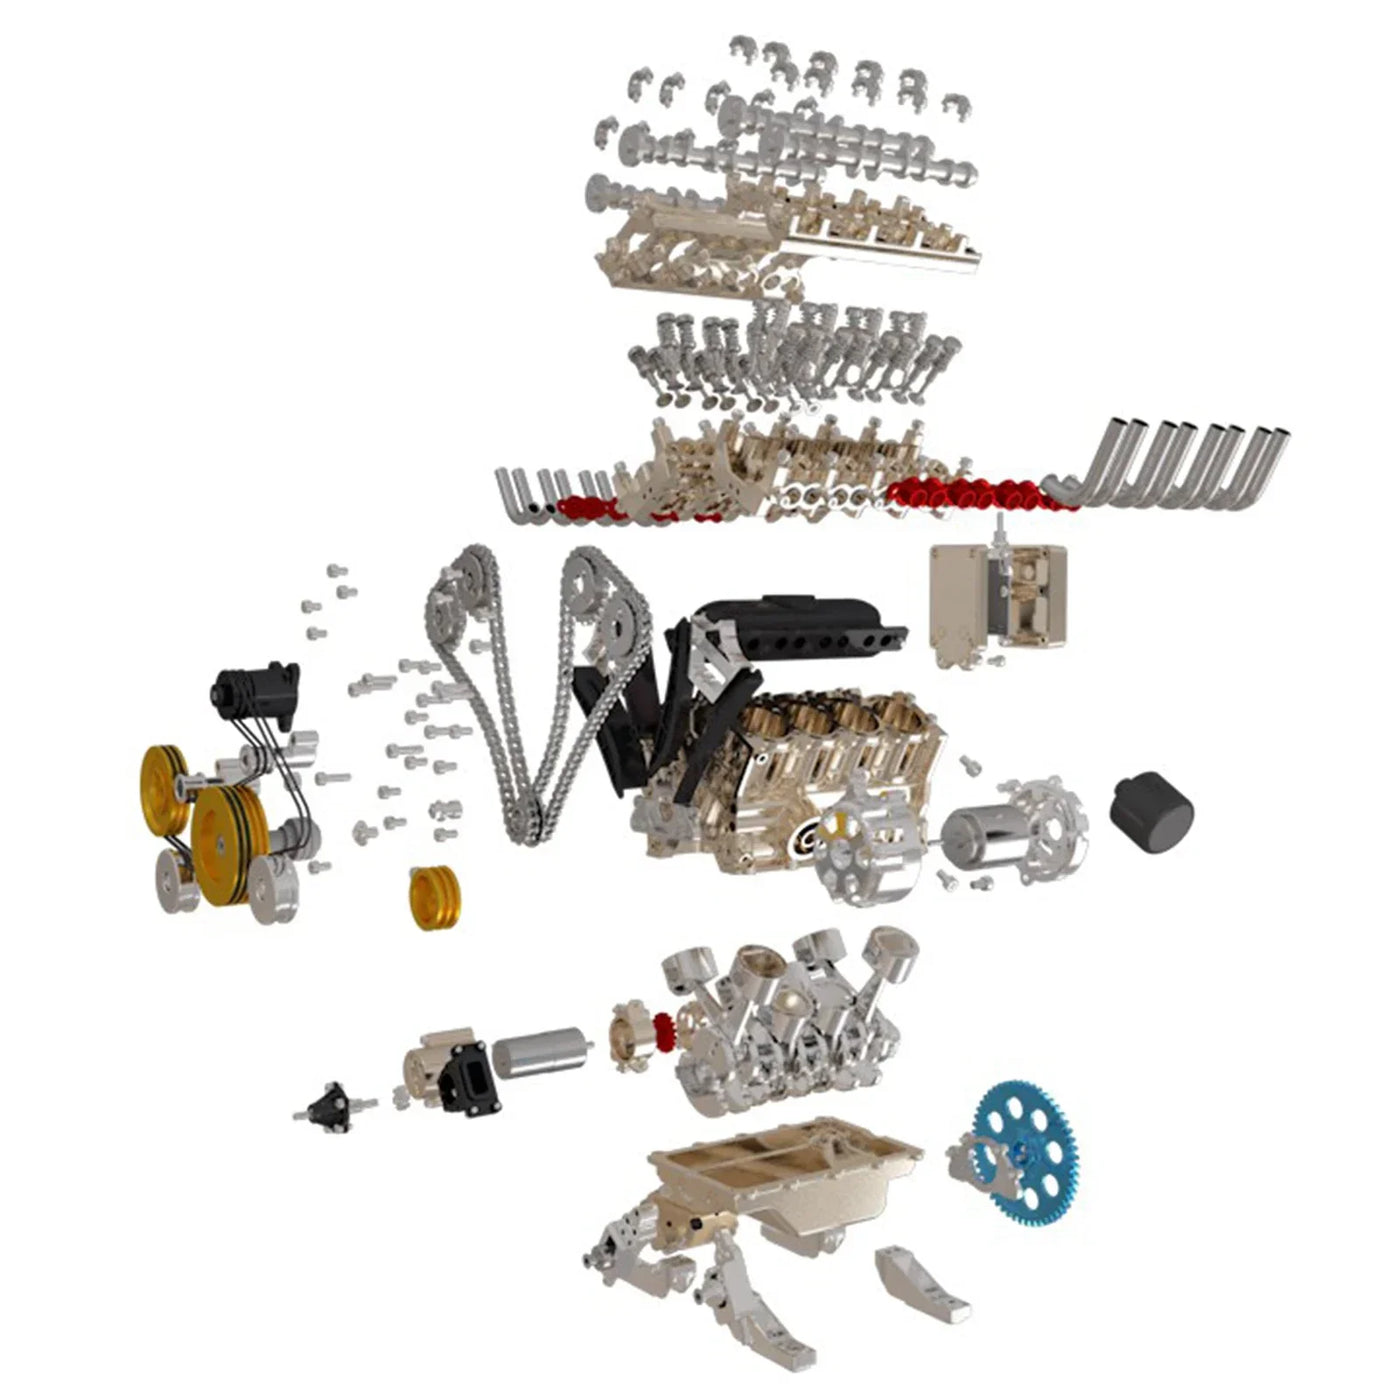 GeariX | Zelfbouw V8 motor modelbouwpakket